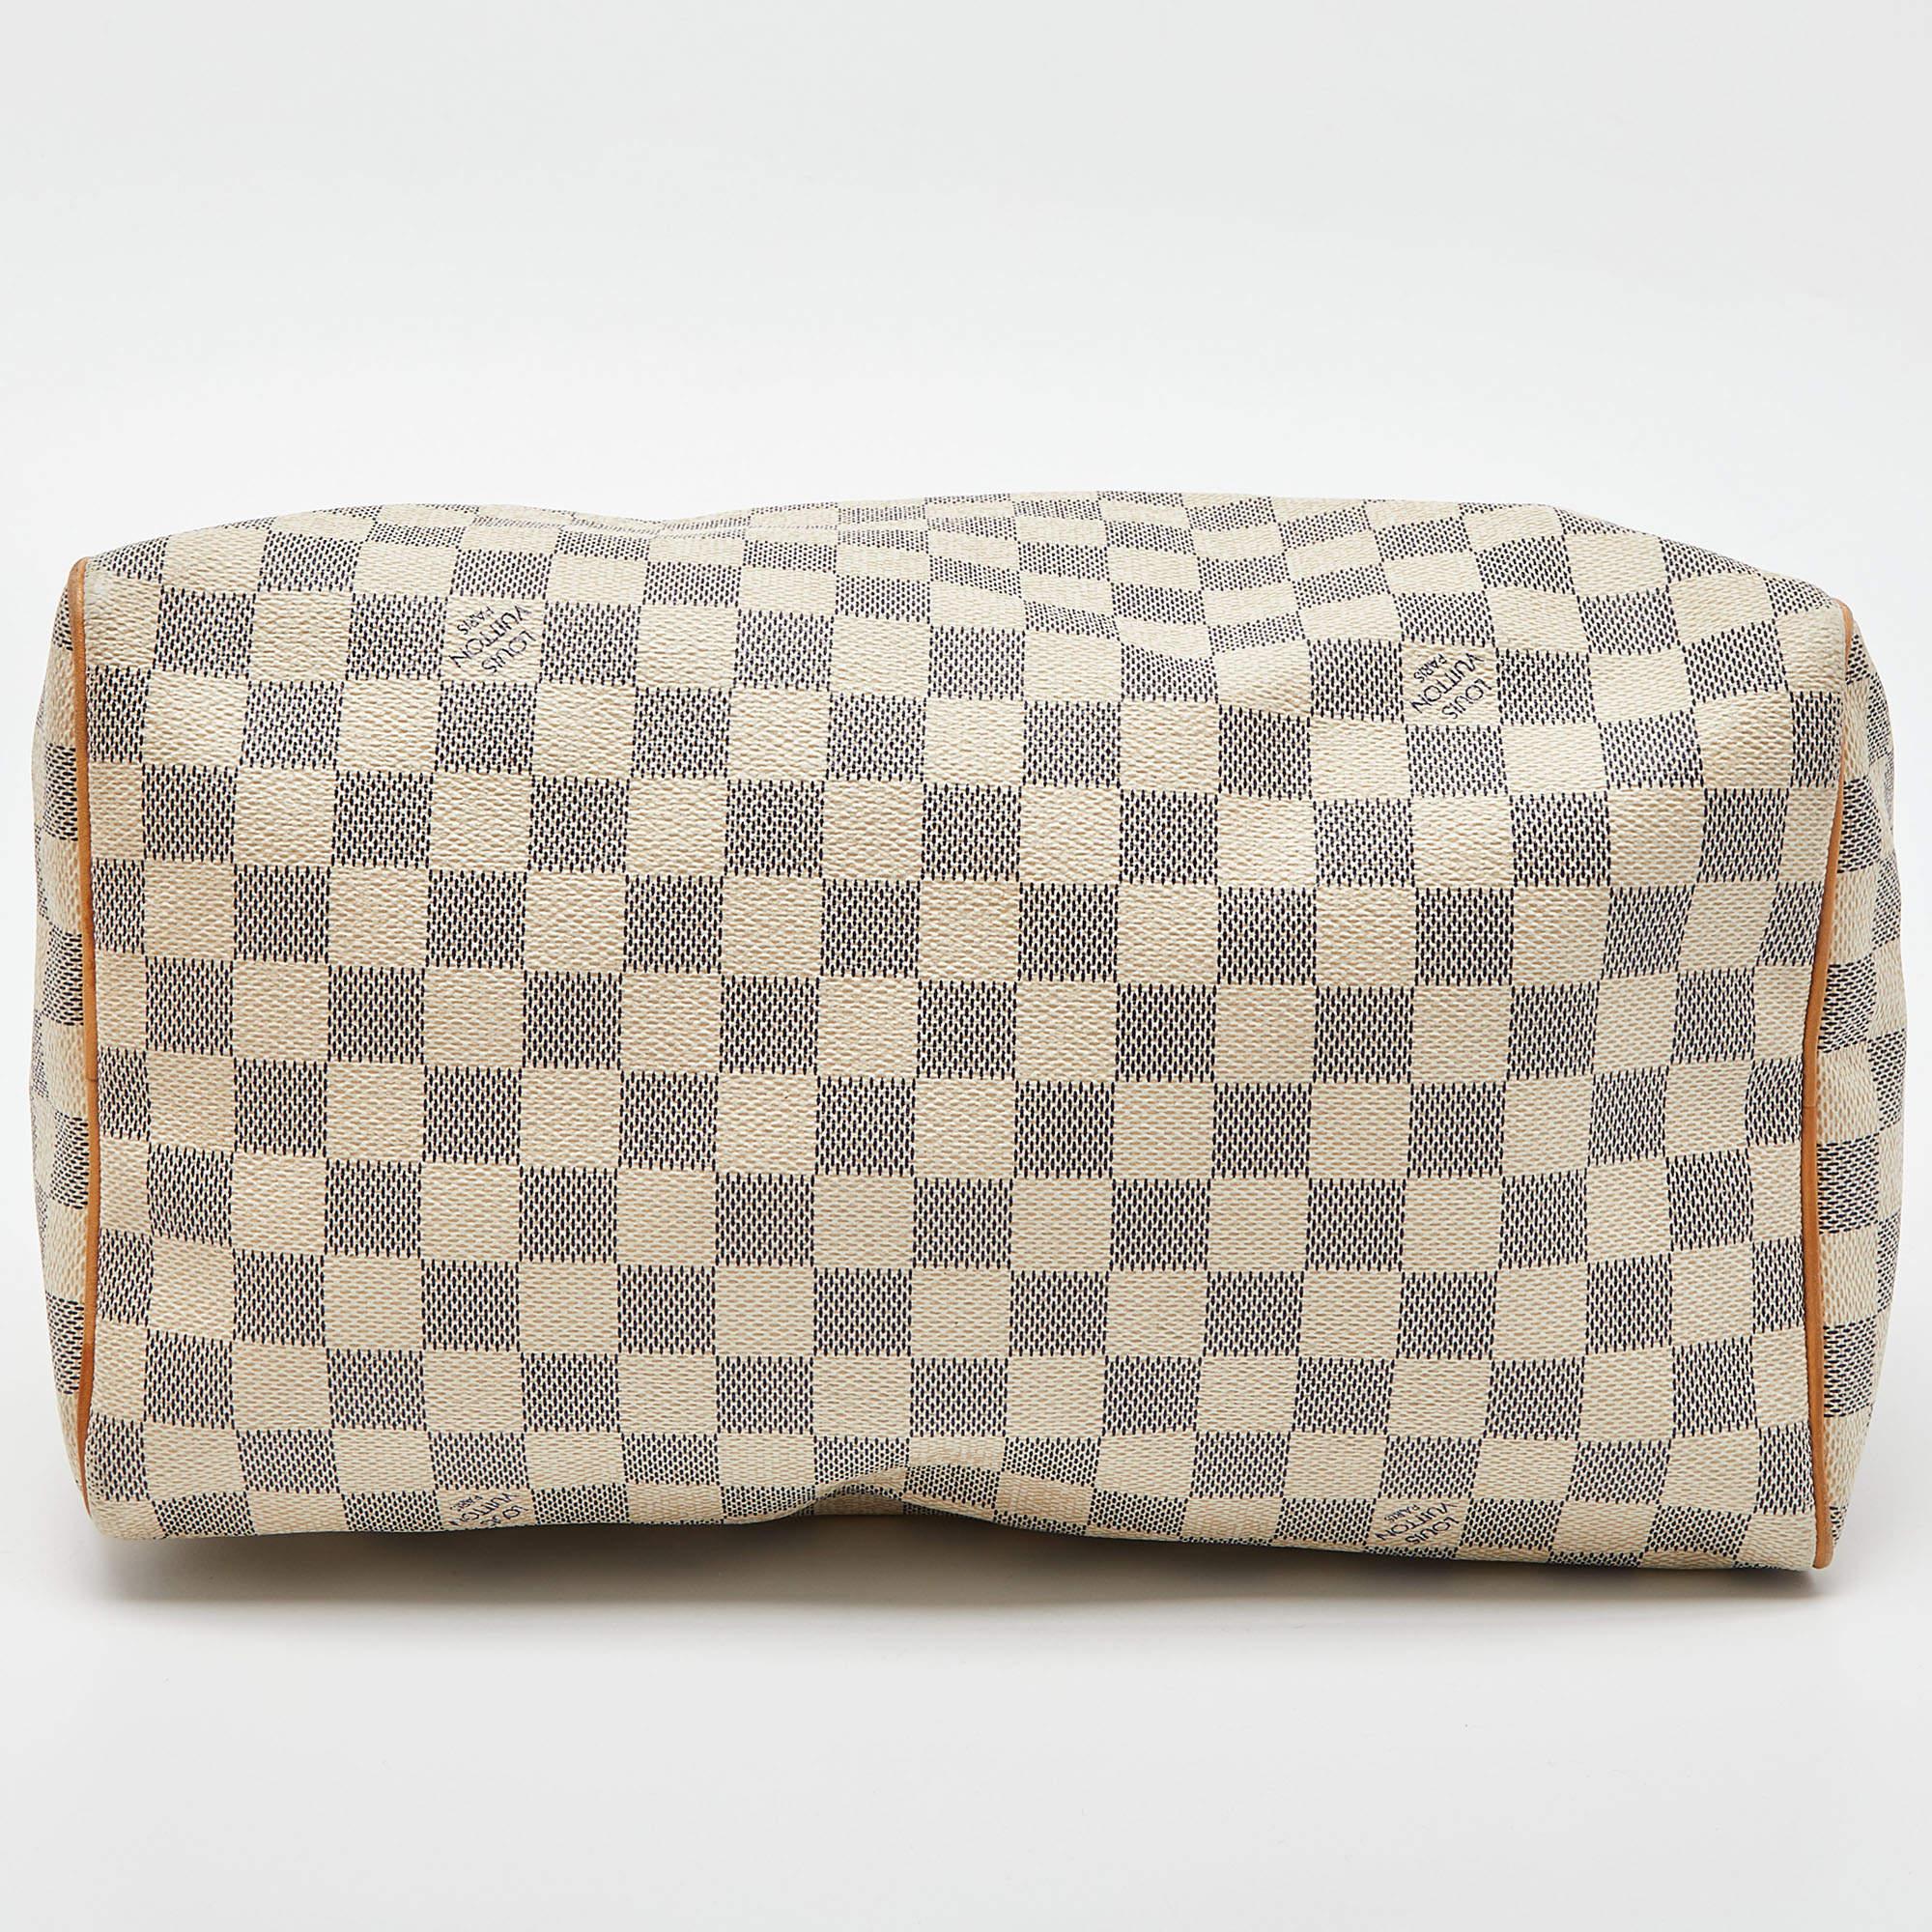 Damier Azur Speedy 30 Tasche aus Segeltuch von Louis Vuitton (Braun)